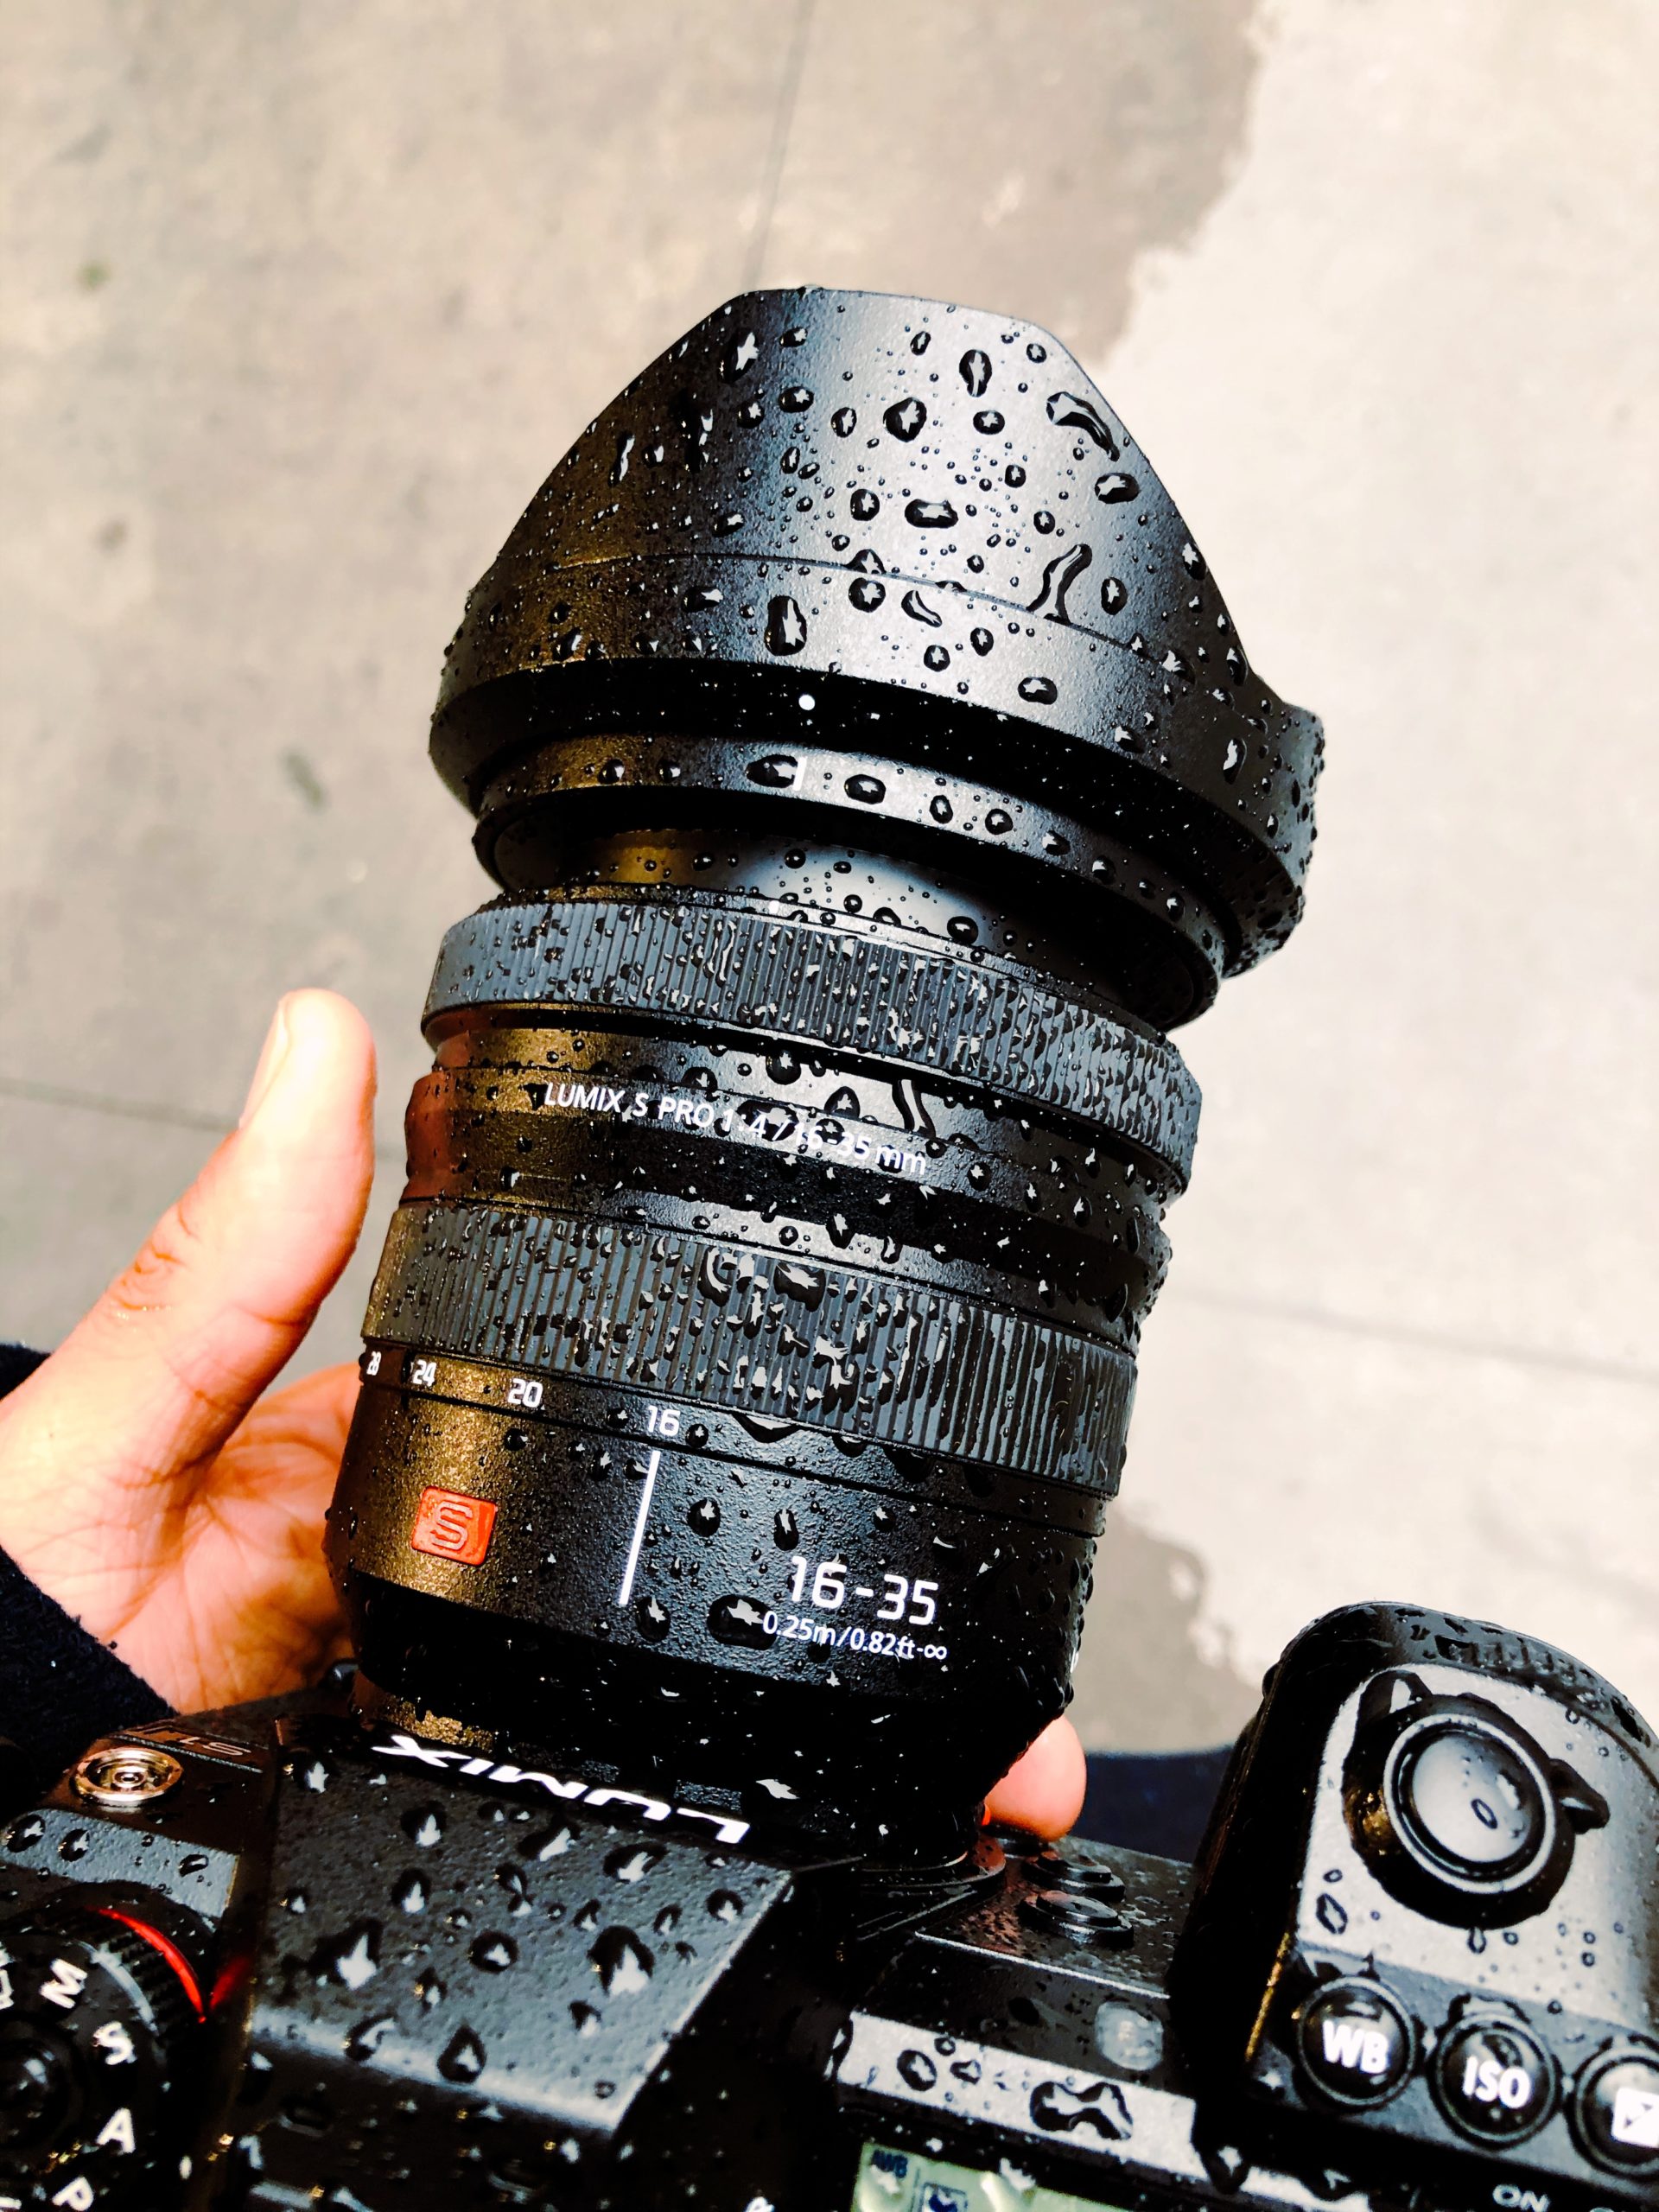 カメラ レンズ(ズーム) The Big City Lens: The Panasonic 16-35mm f4 PRO Review